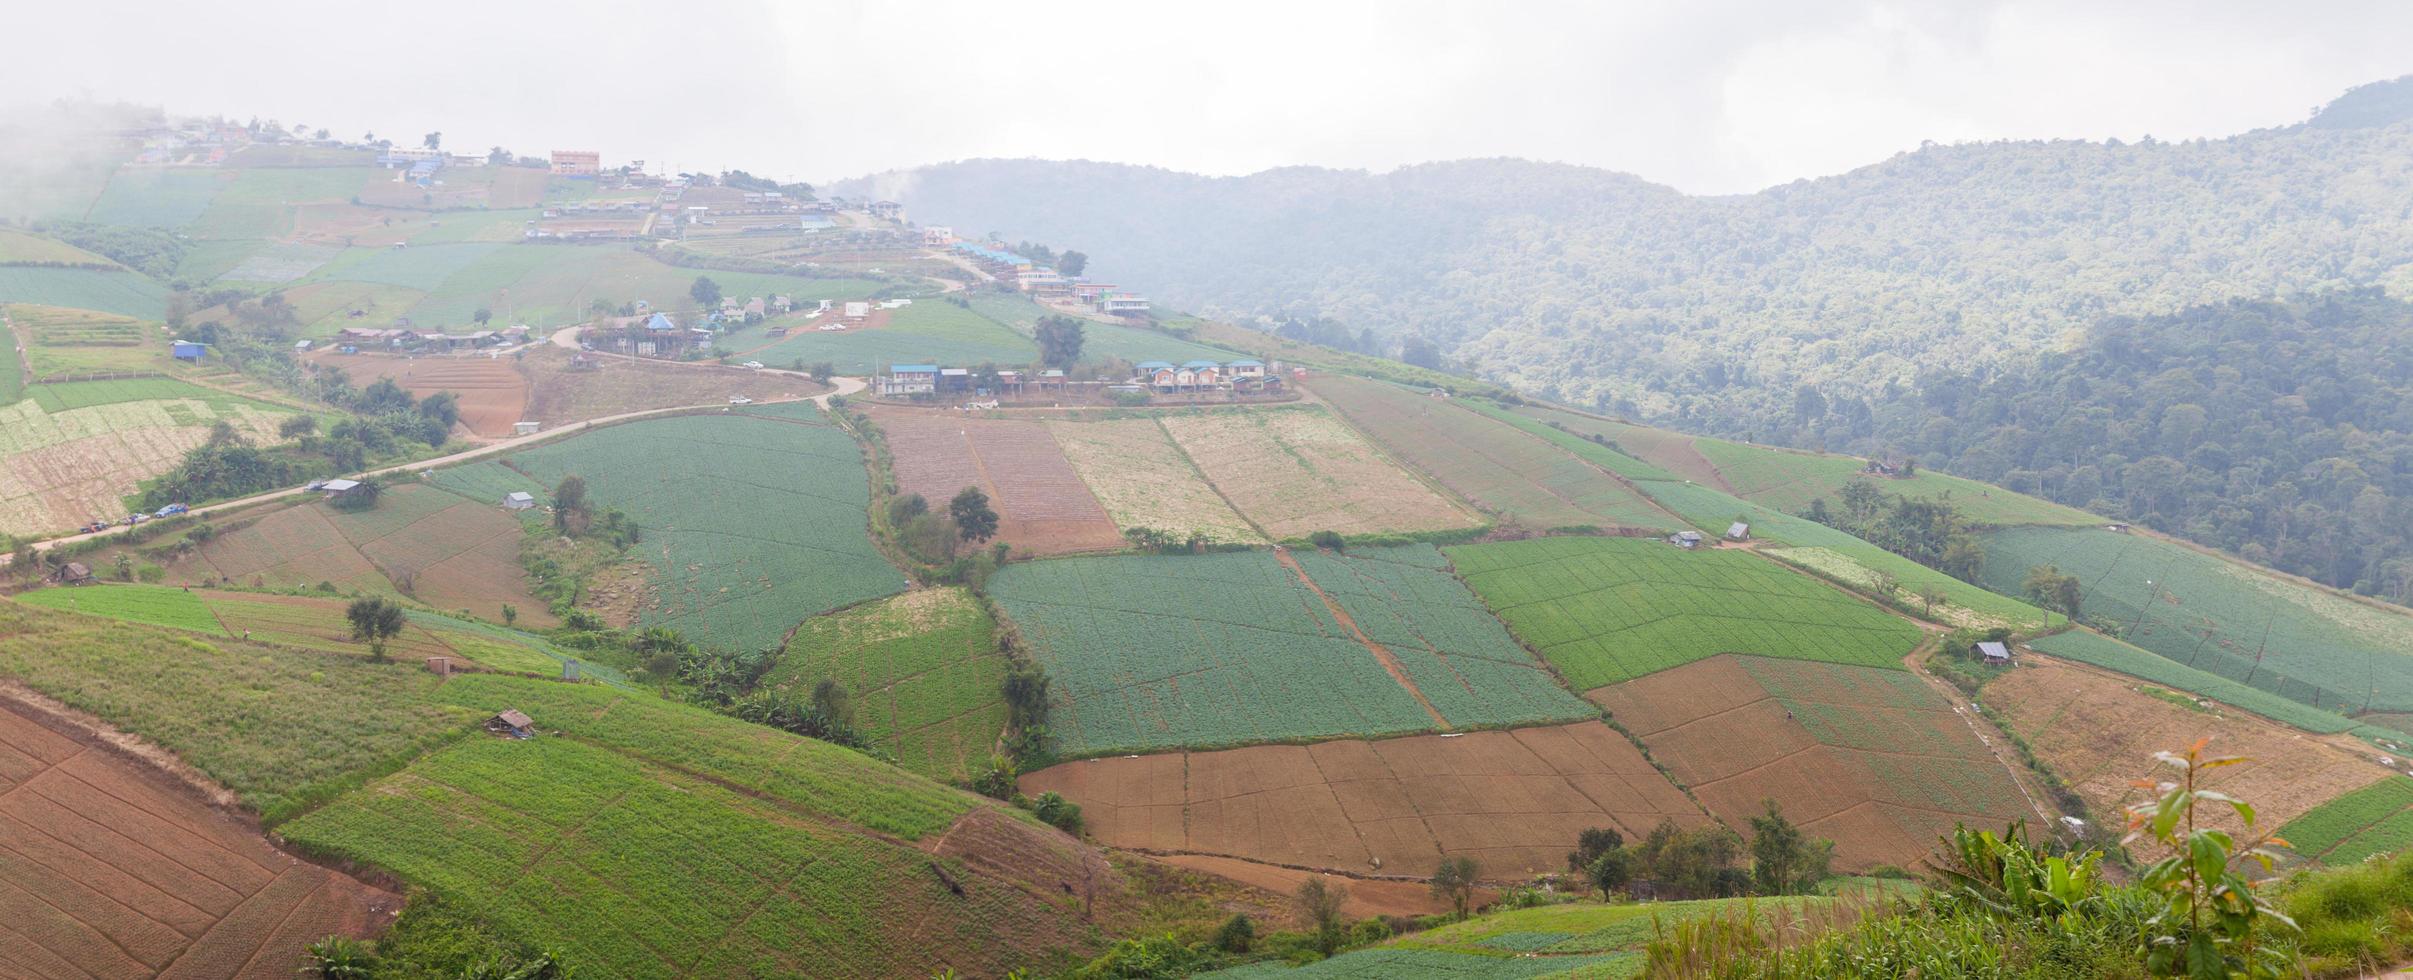 terres agricoles dans les montagnes photo